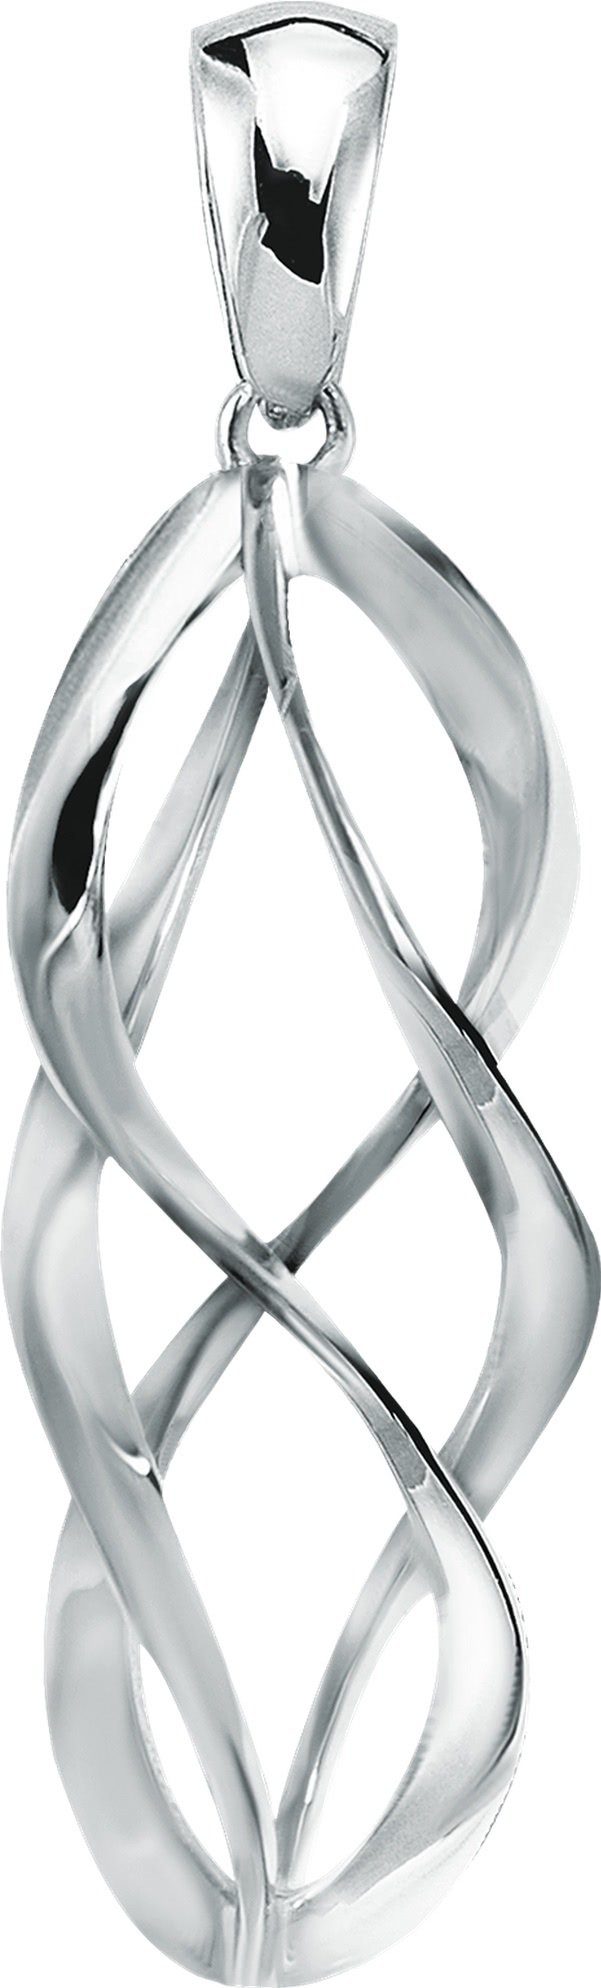 Balia Kettenanhänger Balia Damen Kettenanhänger Silber, Kettenanhänger (Spirale) ca. 3,8cm, 925 Sterling Silber